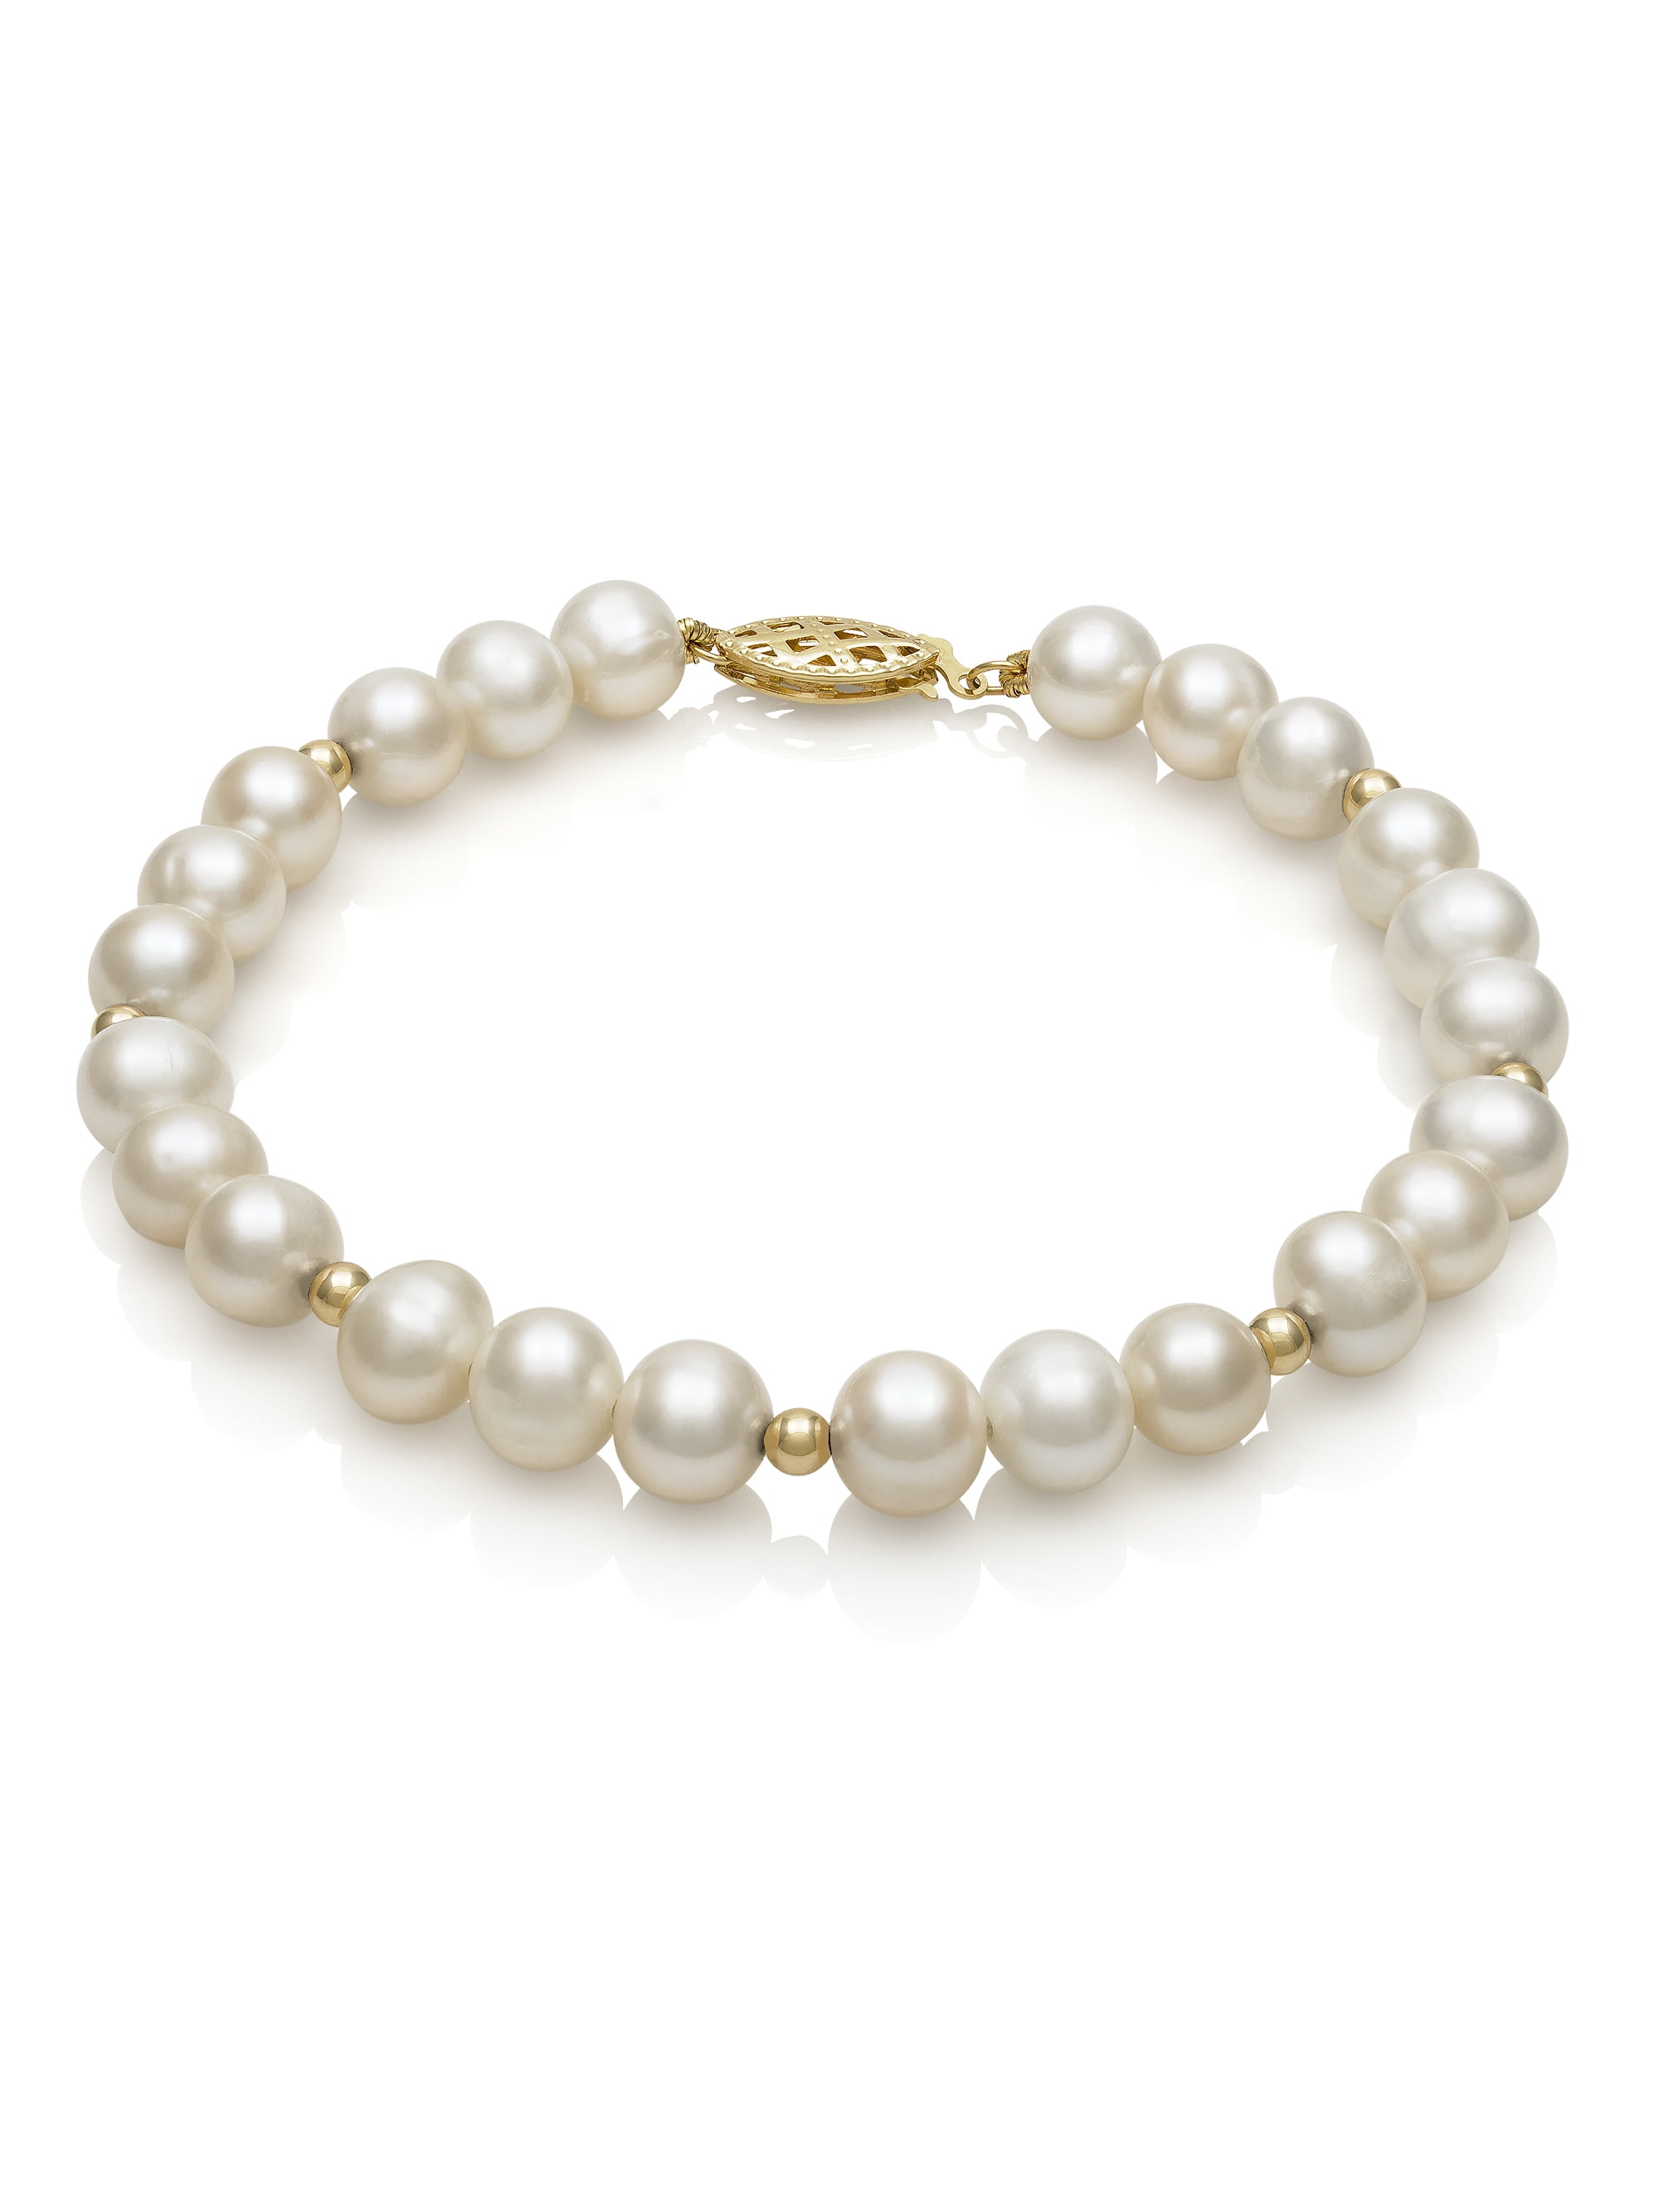 Sophia Fine Jewelry Freshwater White Pearl 7 Bracelet,14K Yellow Gold